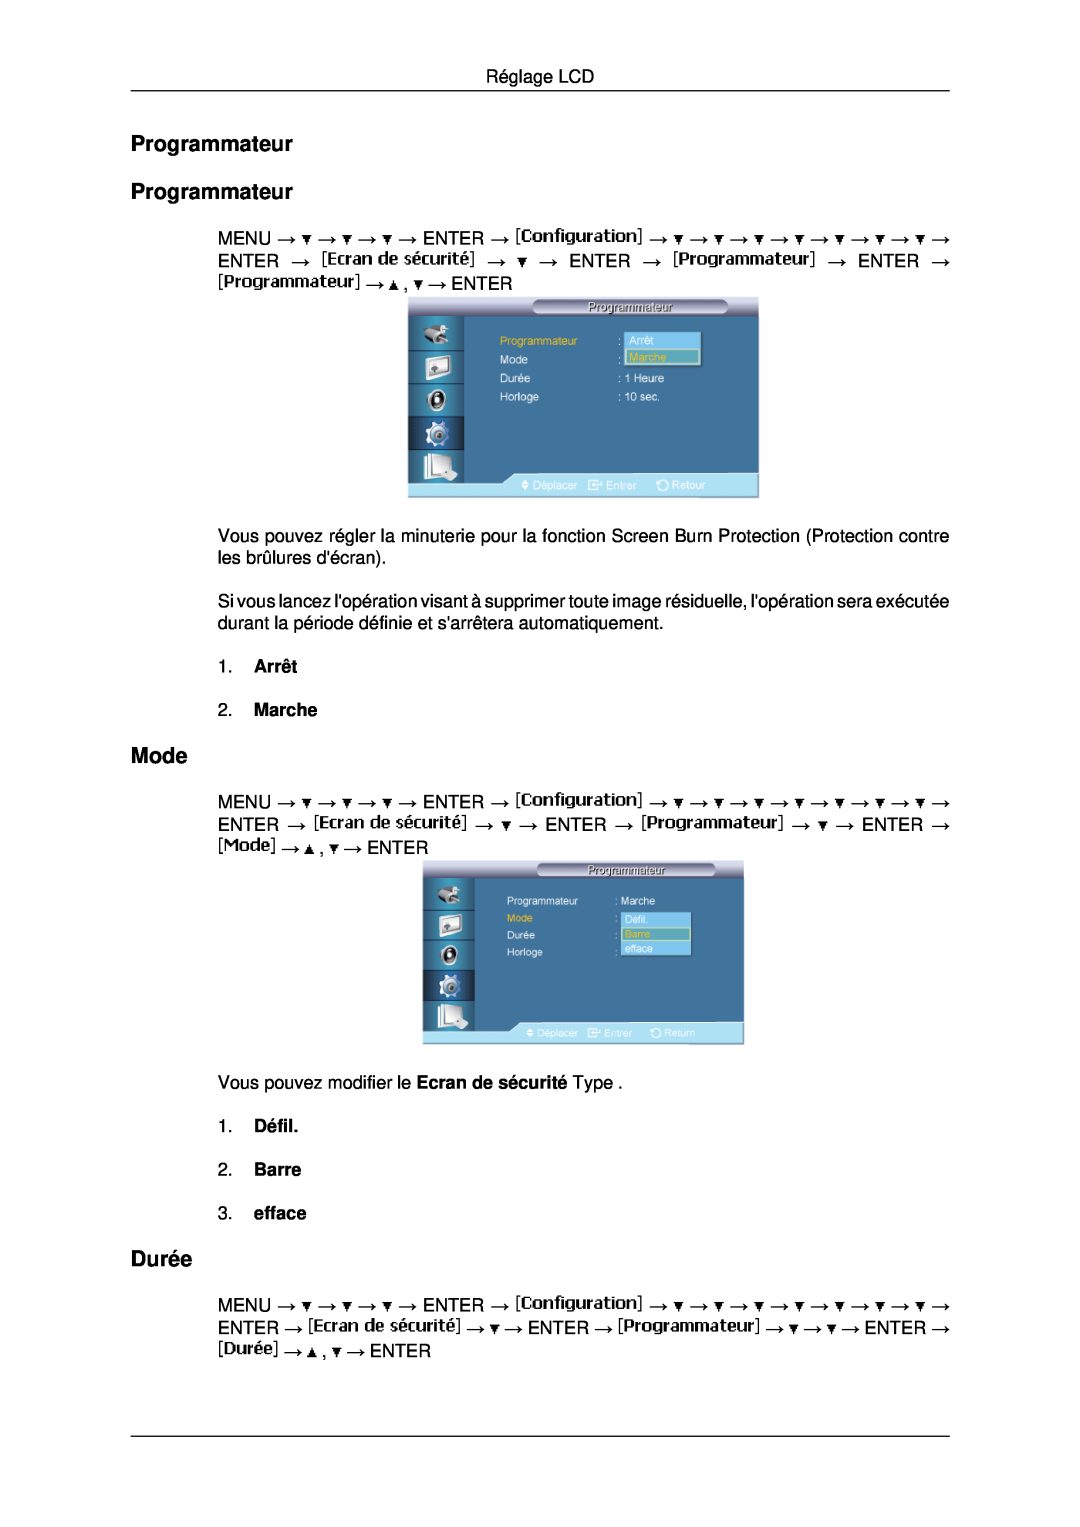 Samsung LH40MRTLBC/EN manual Programmateur Programmateur, Durée, 1. Défil 2. Barre 3. efface, Mode, Arrêt 2. Marche 